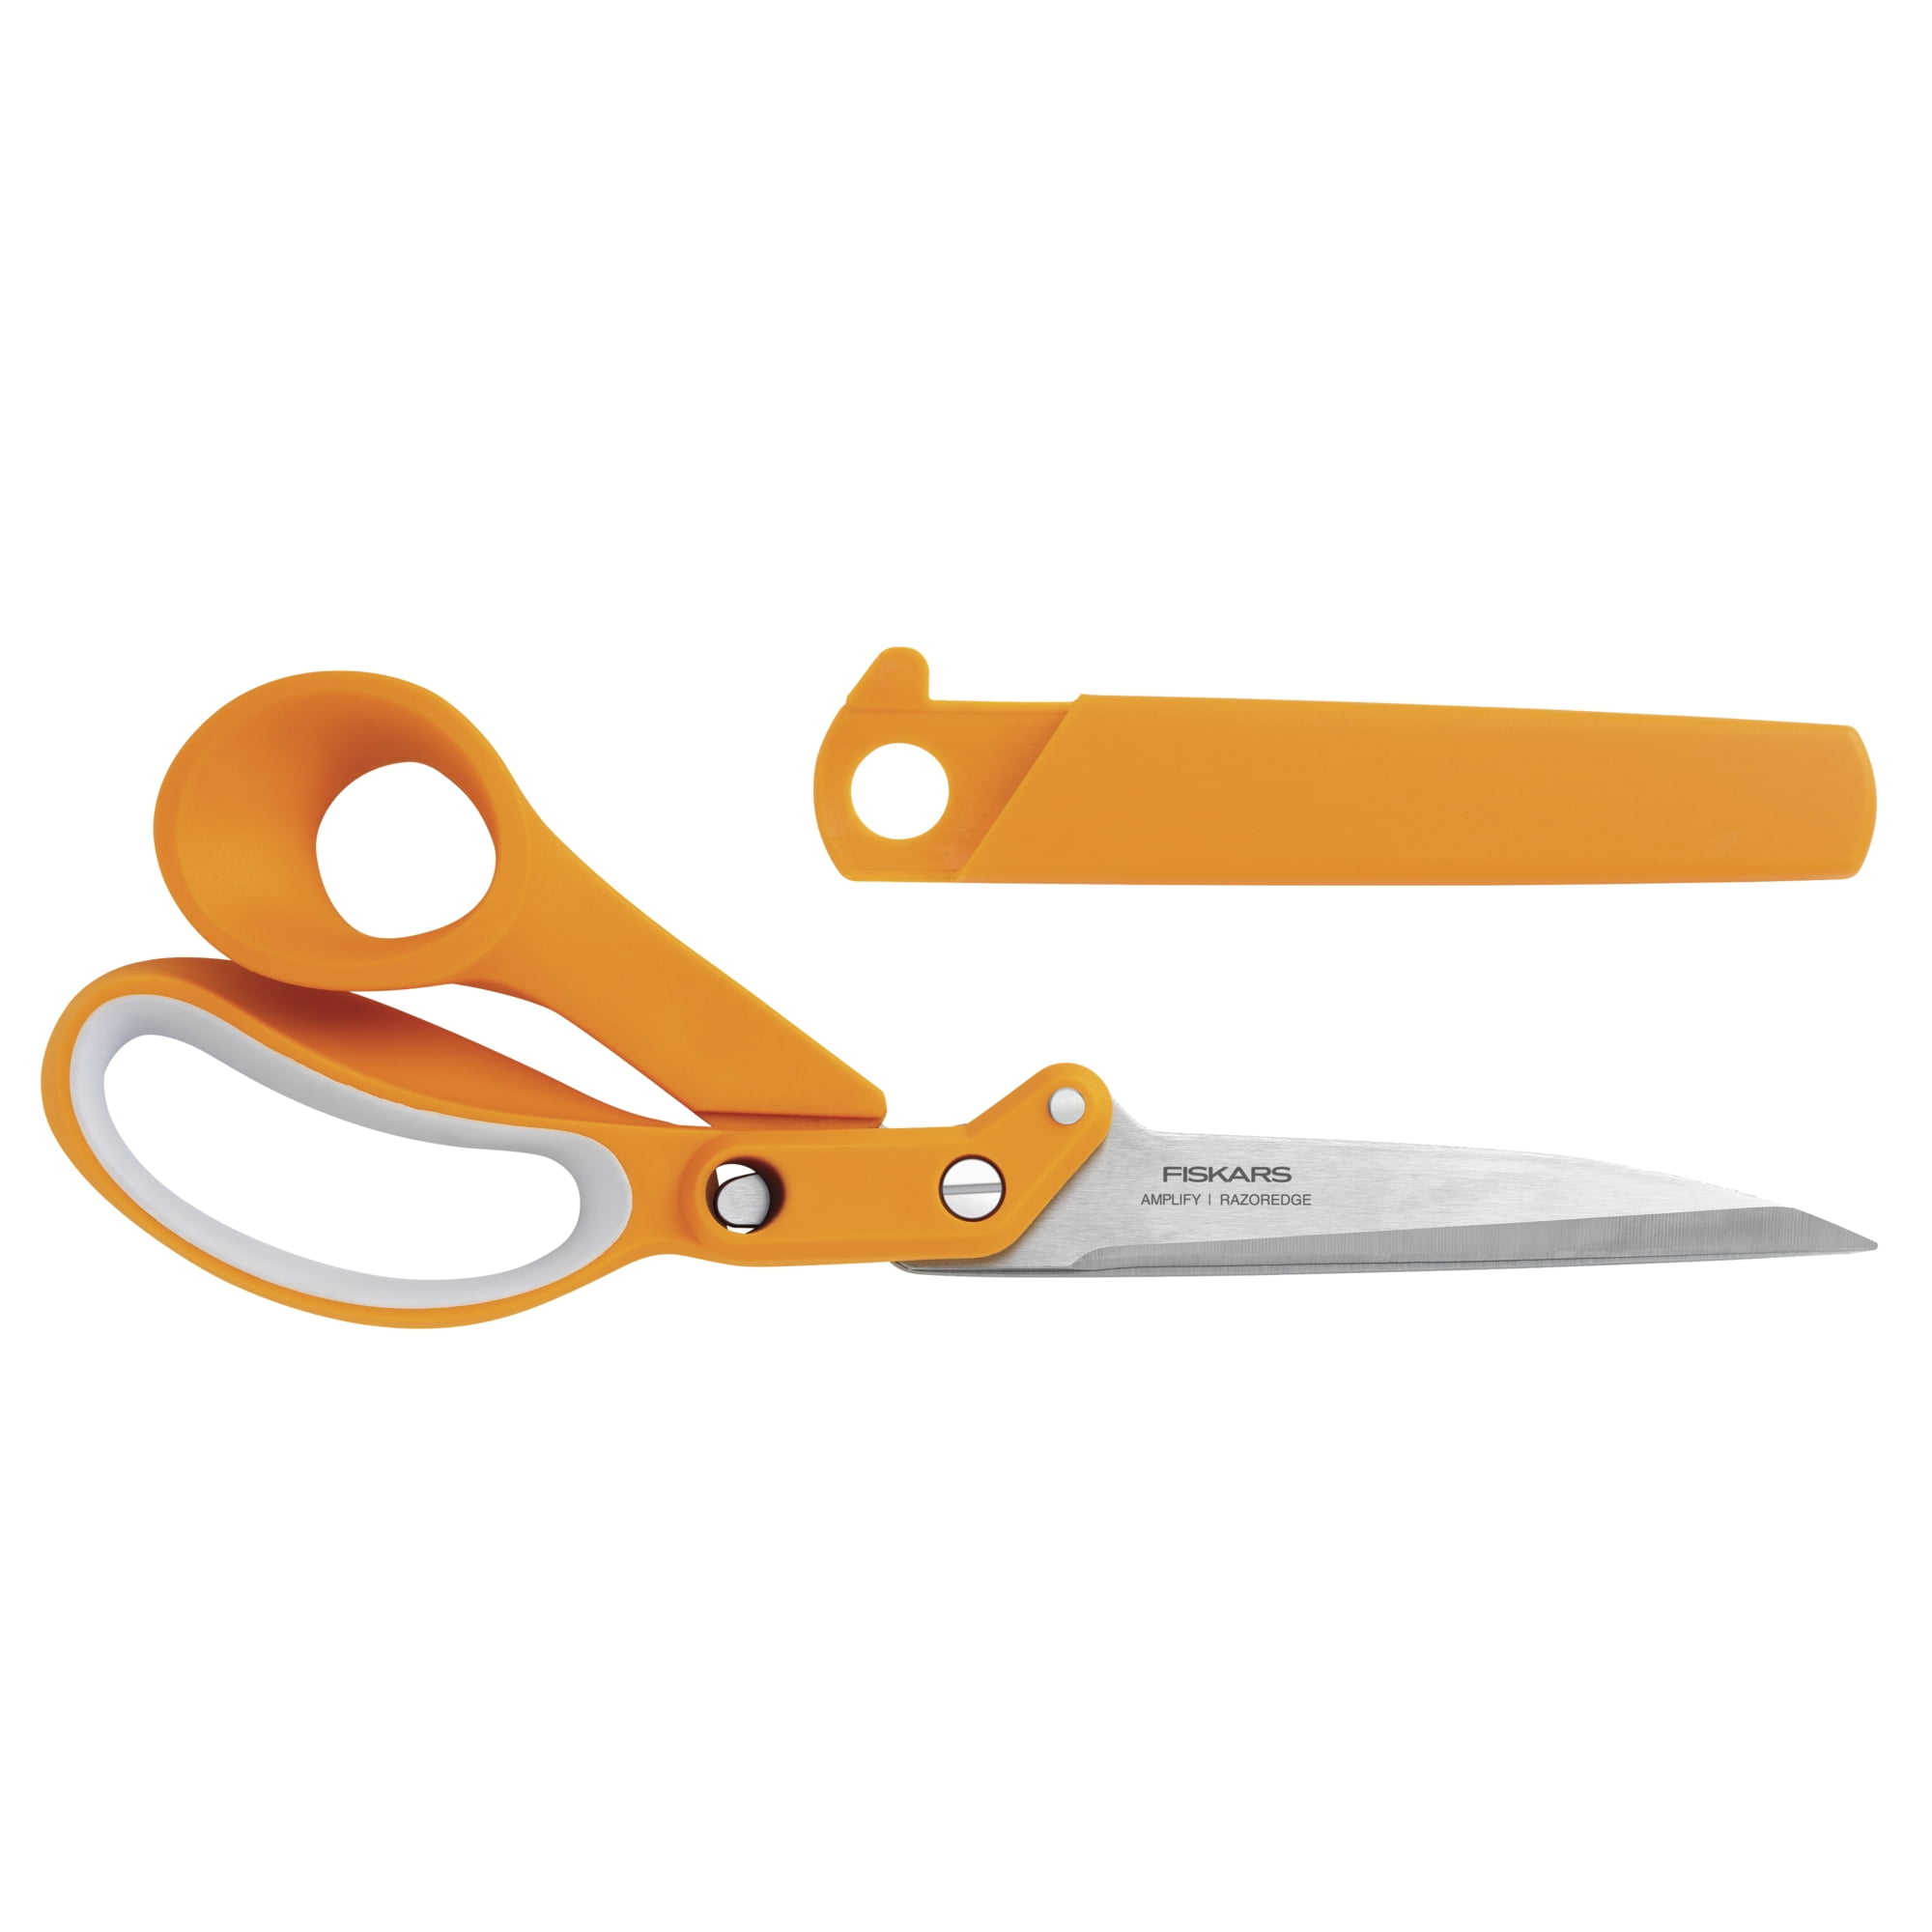 Fiskars ReNew hobby scissors, 13 cm